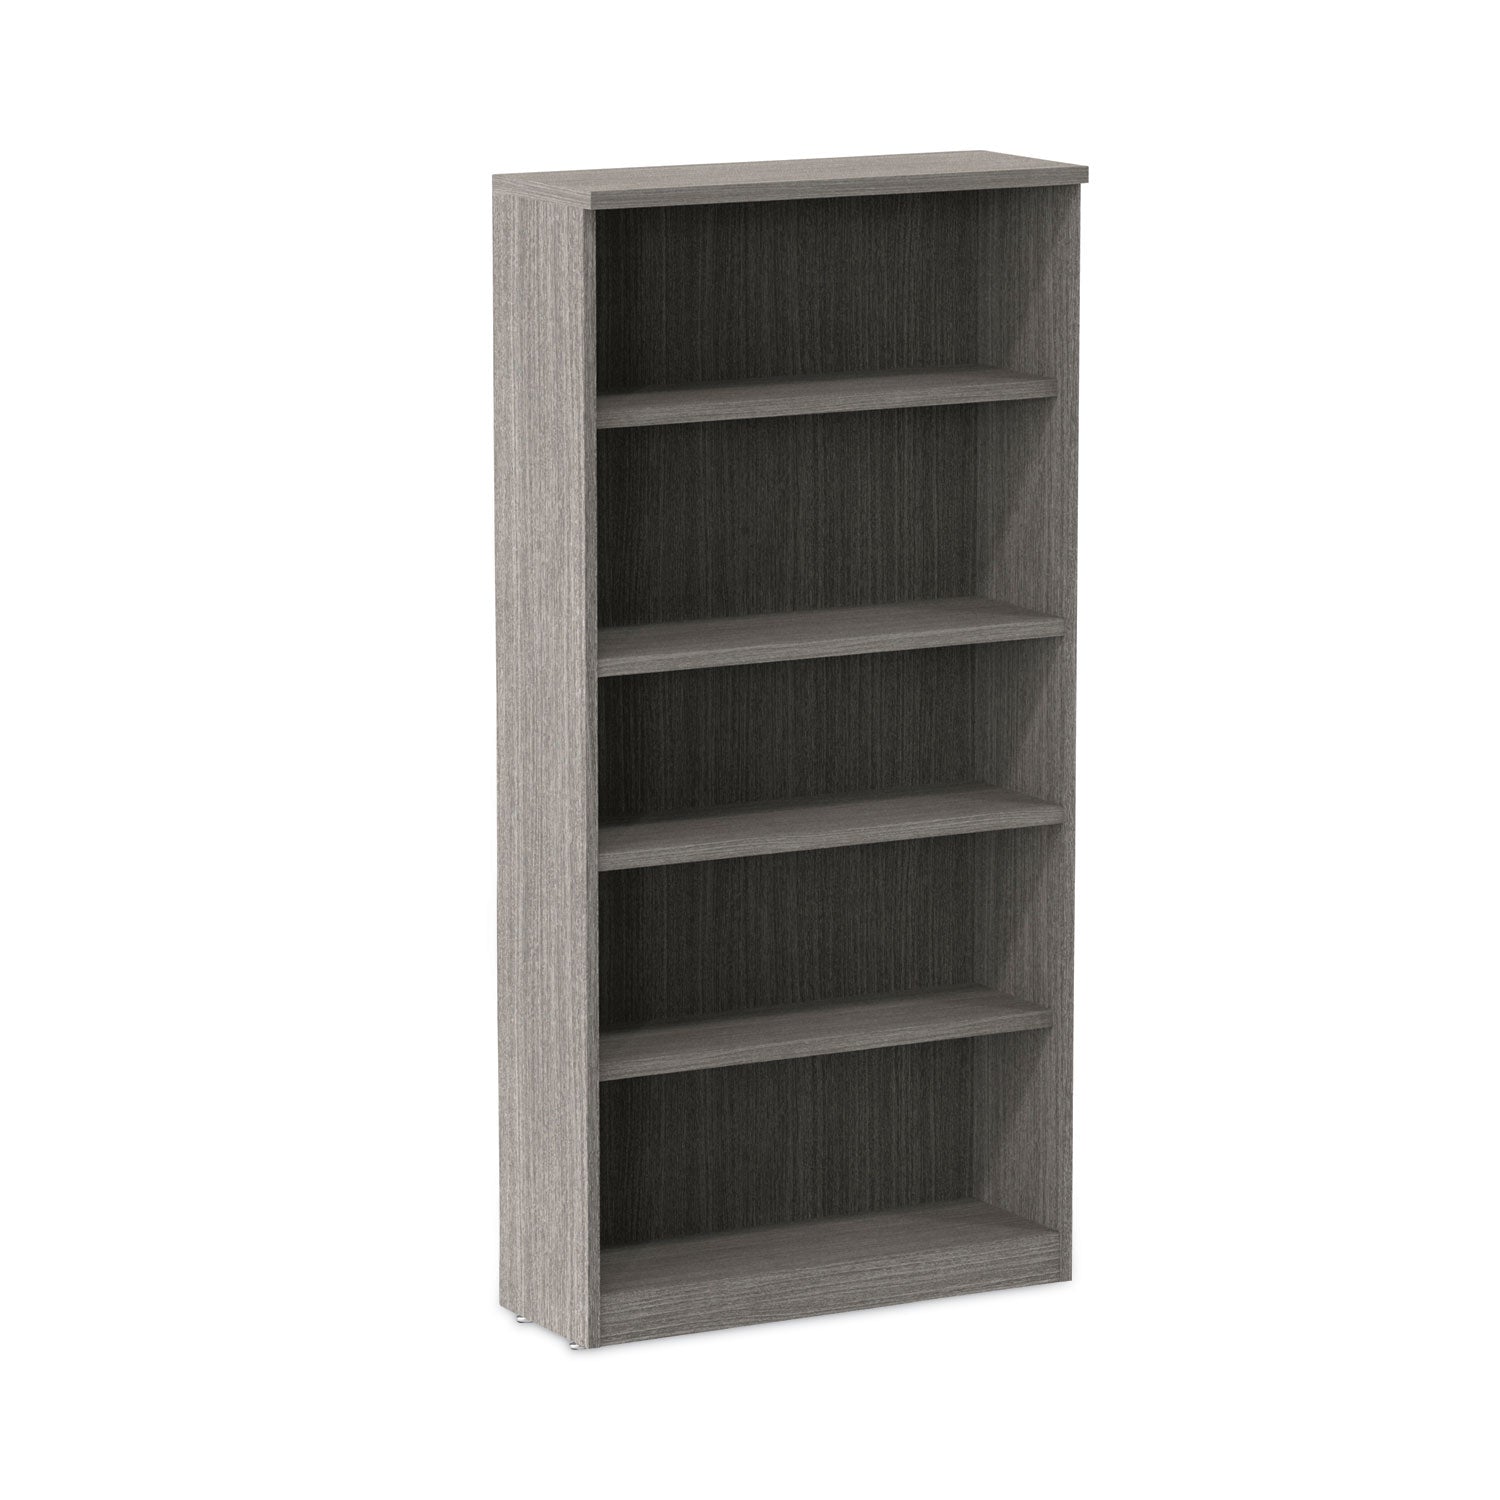 alera-valencia-series-bookcase-five-shelf-3175w-x-14d-x-6475h-gray_aleva636632gy - 1